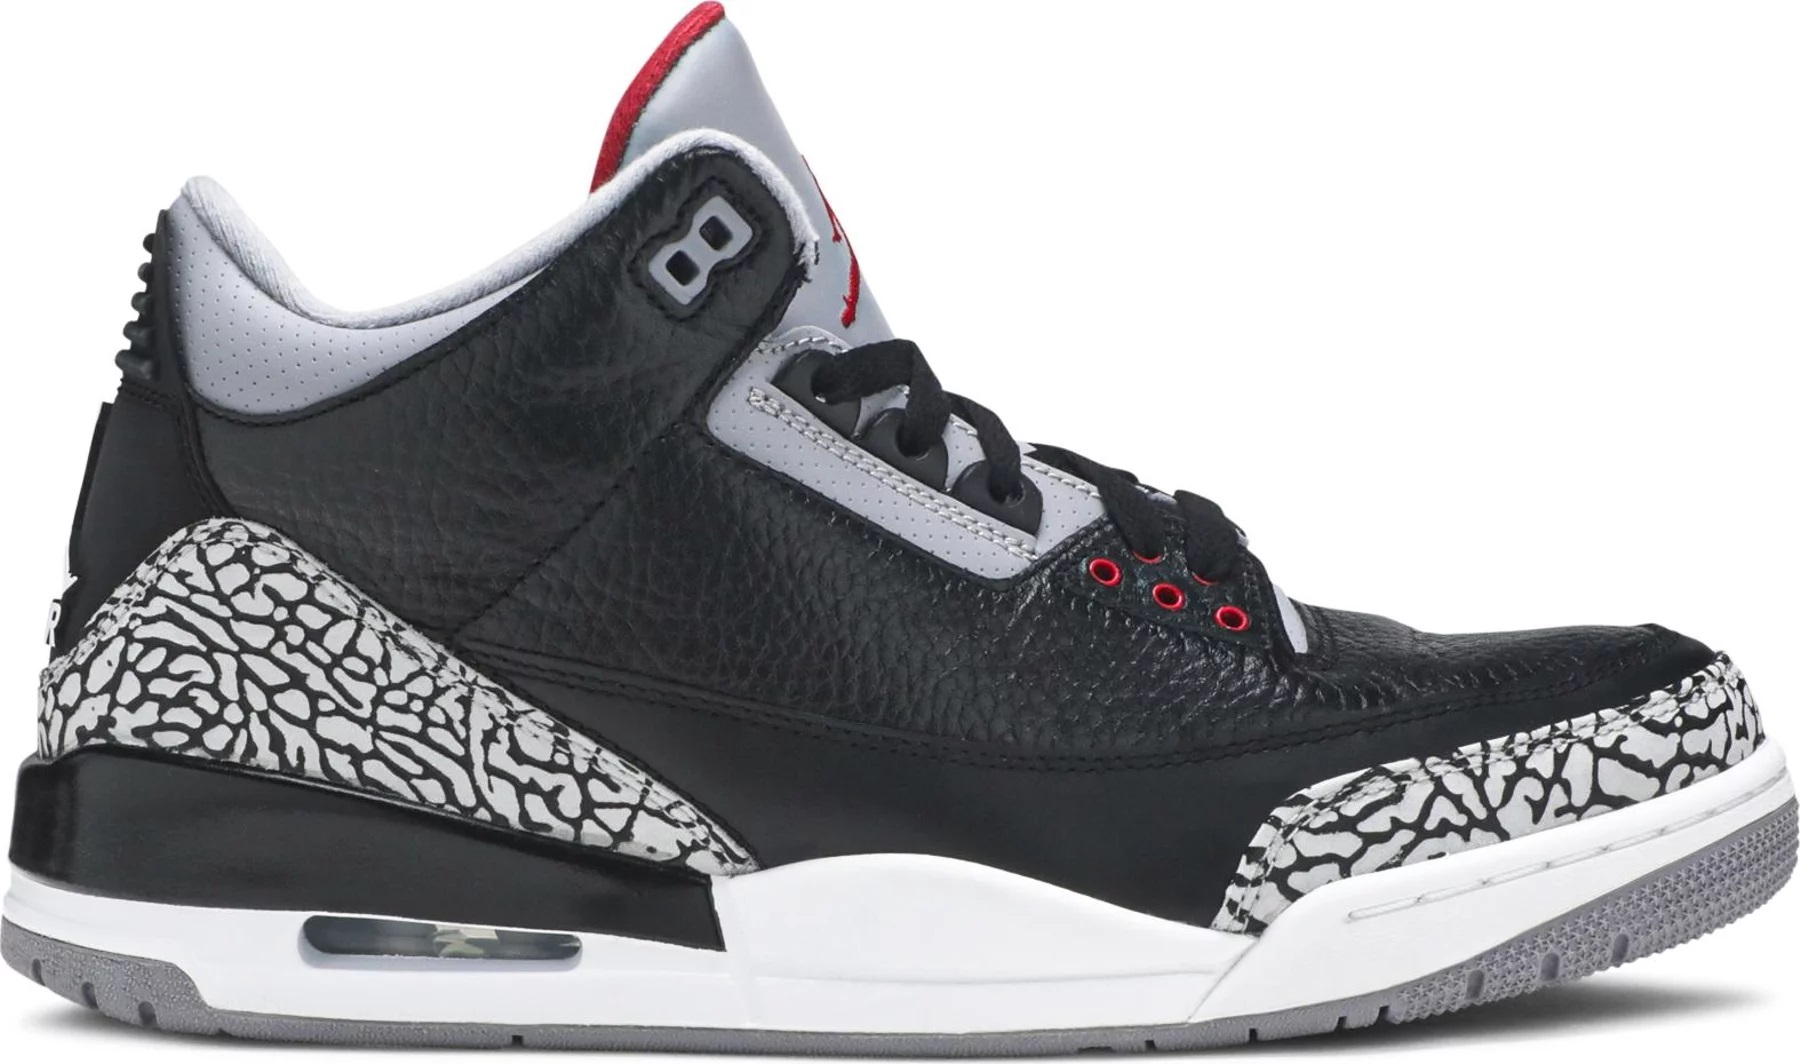 Jordan 3 Retro OG 'Black Cement' 2011